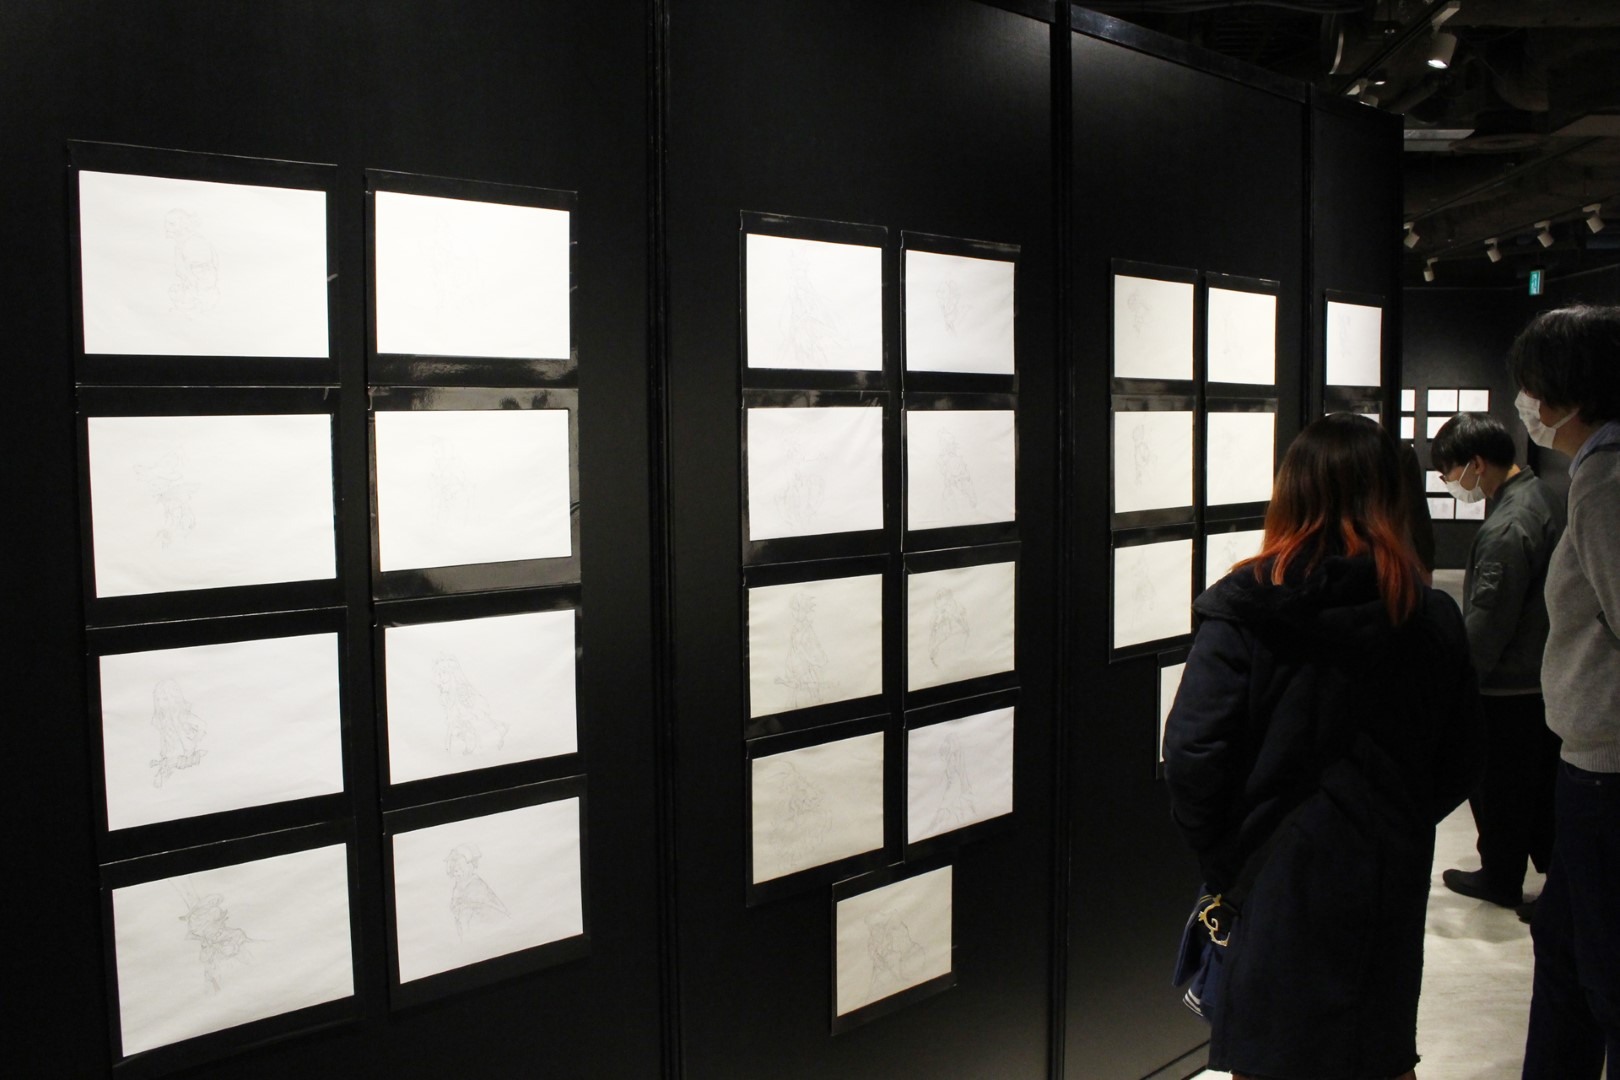 日本《Bravely Default》10 周年记念展现场报导展示超过两百张以上插图原画插图16